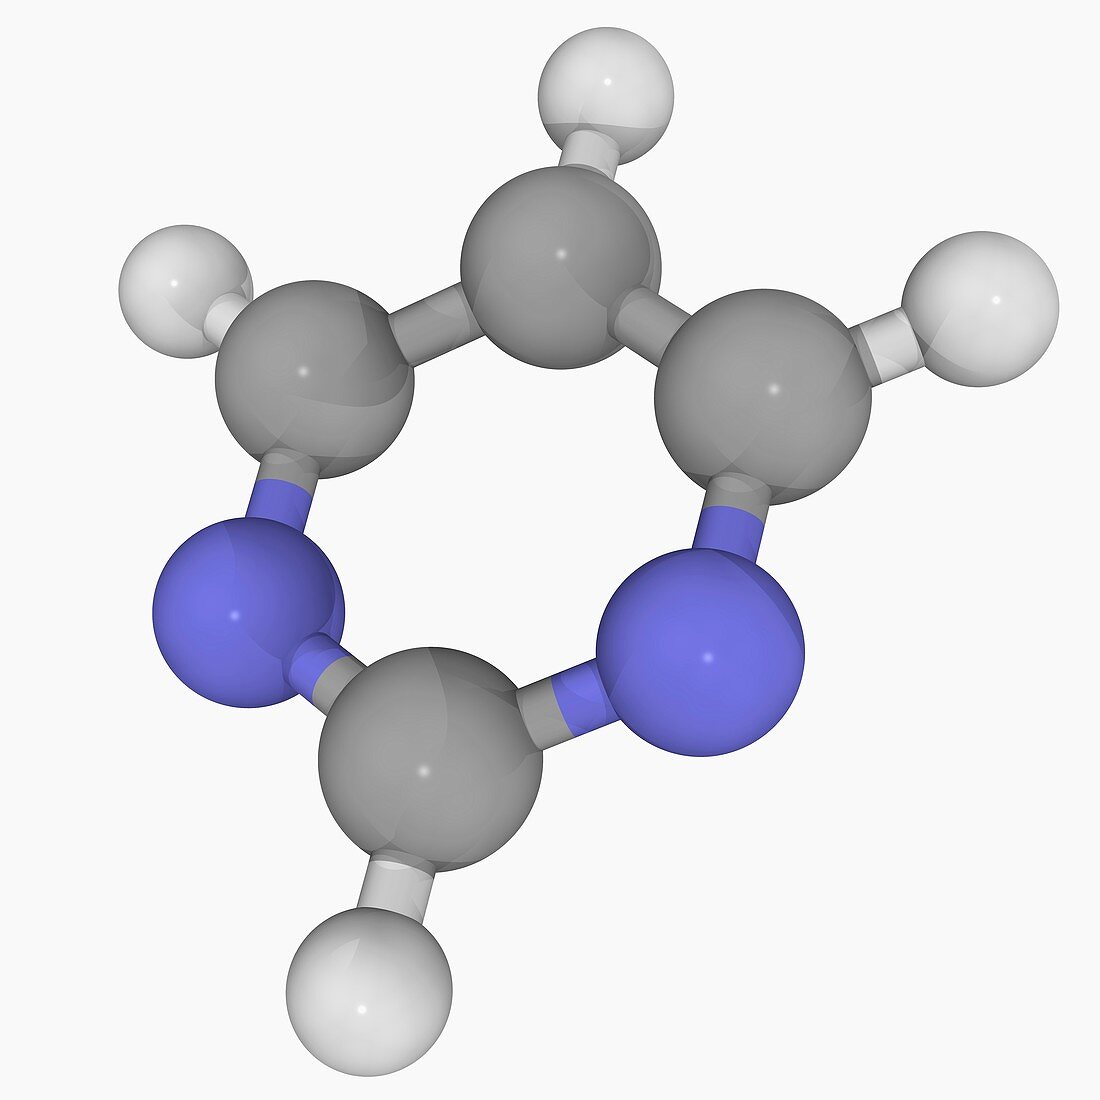 Pyrimidine molecule